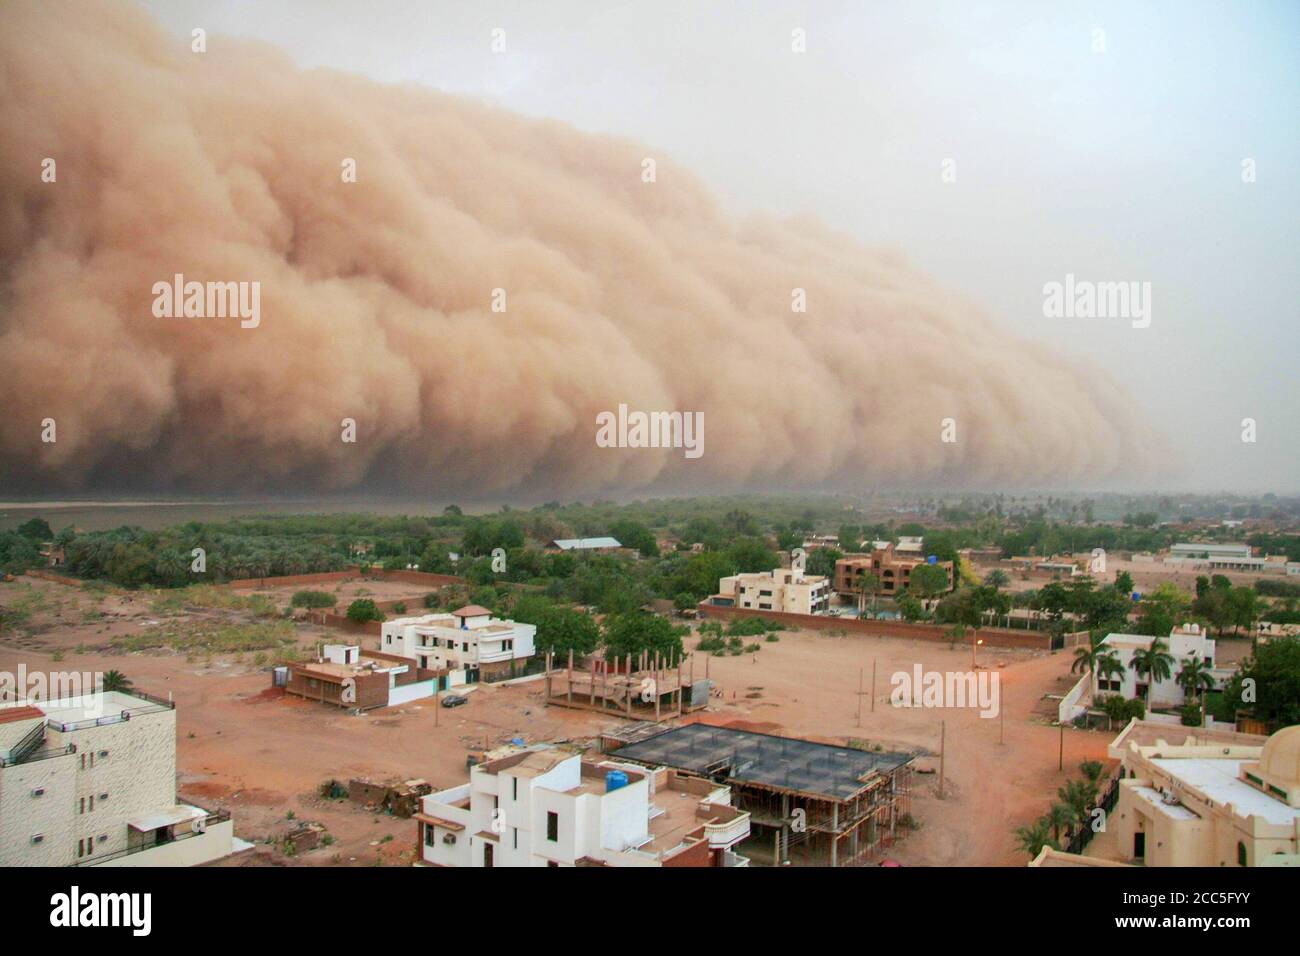 Un habob qui s'approche de la périphérie de Khartoum, au Soudan. Un habob est un type de tempête intense de poussière portée sur le vent qui se produit régulièrement au Soudan. Banque D'Images